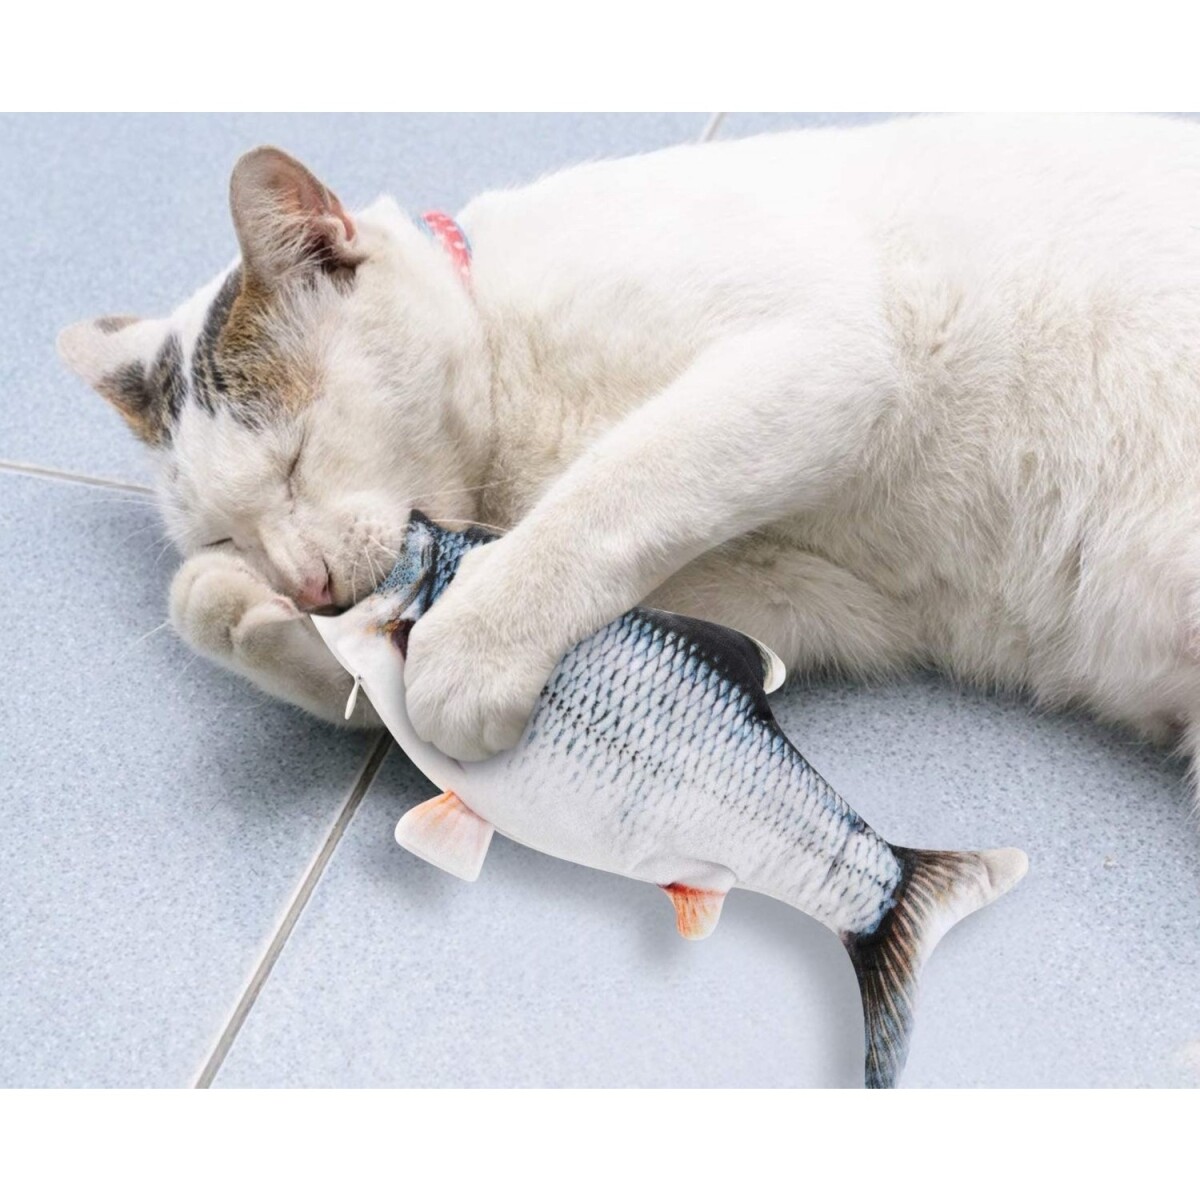 Kedi Oyuncağı; Dans Eden, Şarj Edilebilir Balık